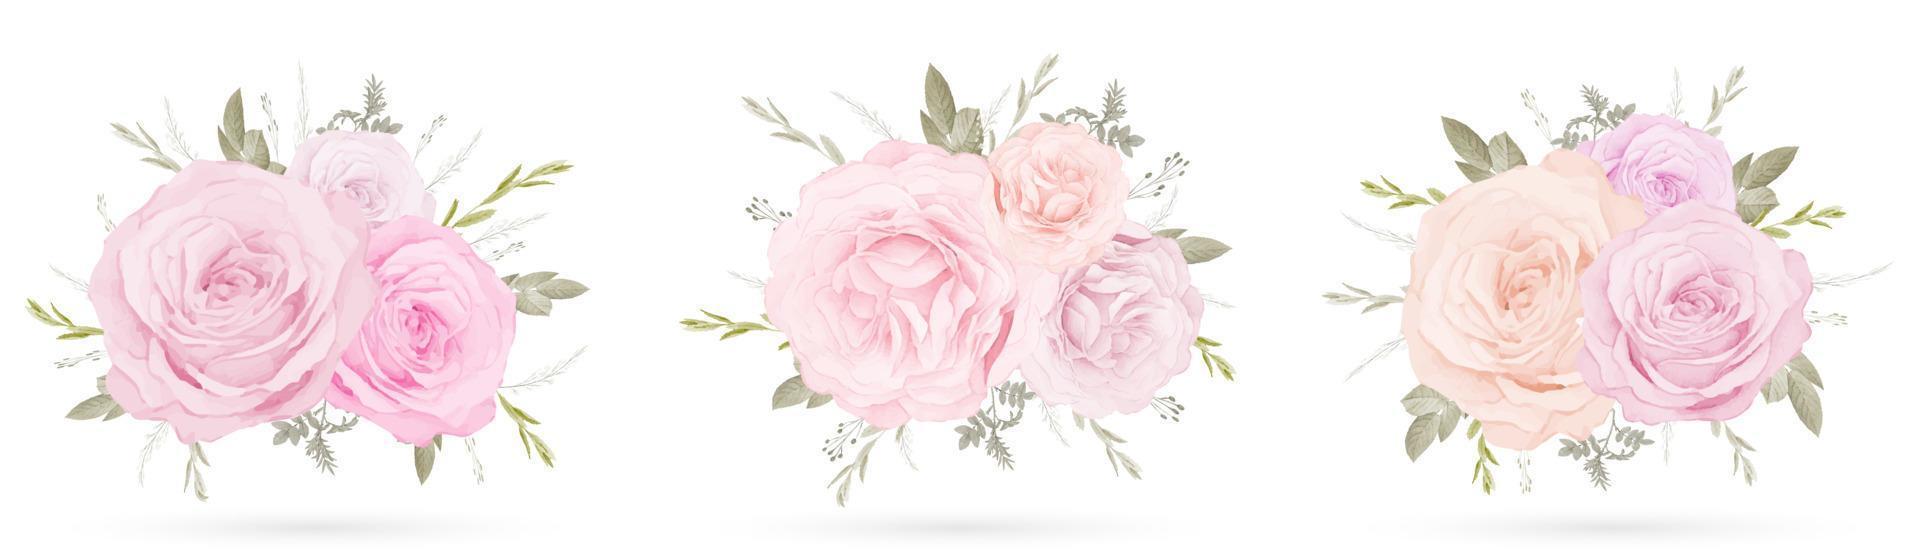 sammlung von rosa rosenblumenstrauß vektor